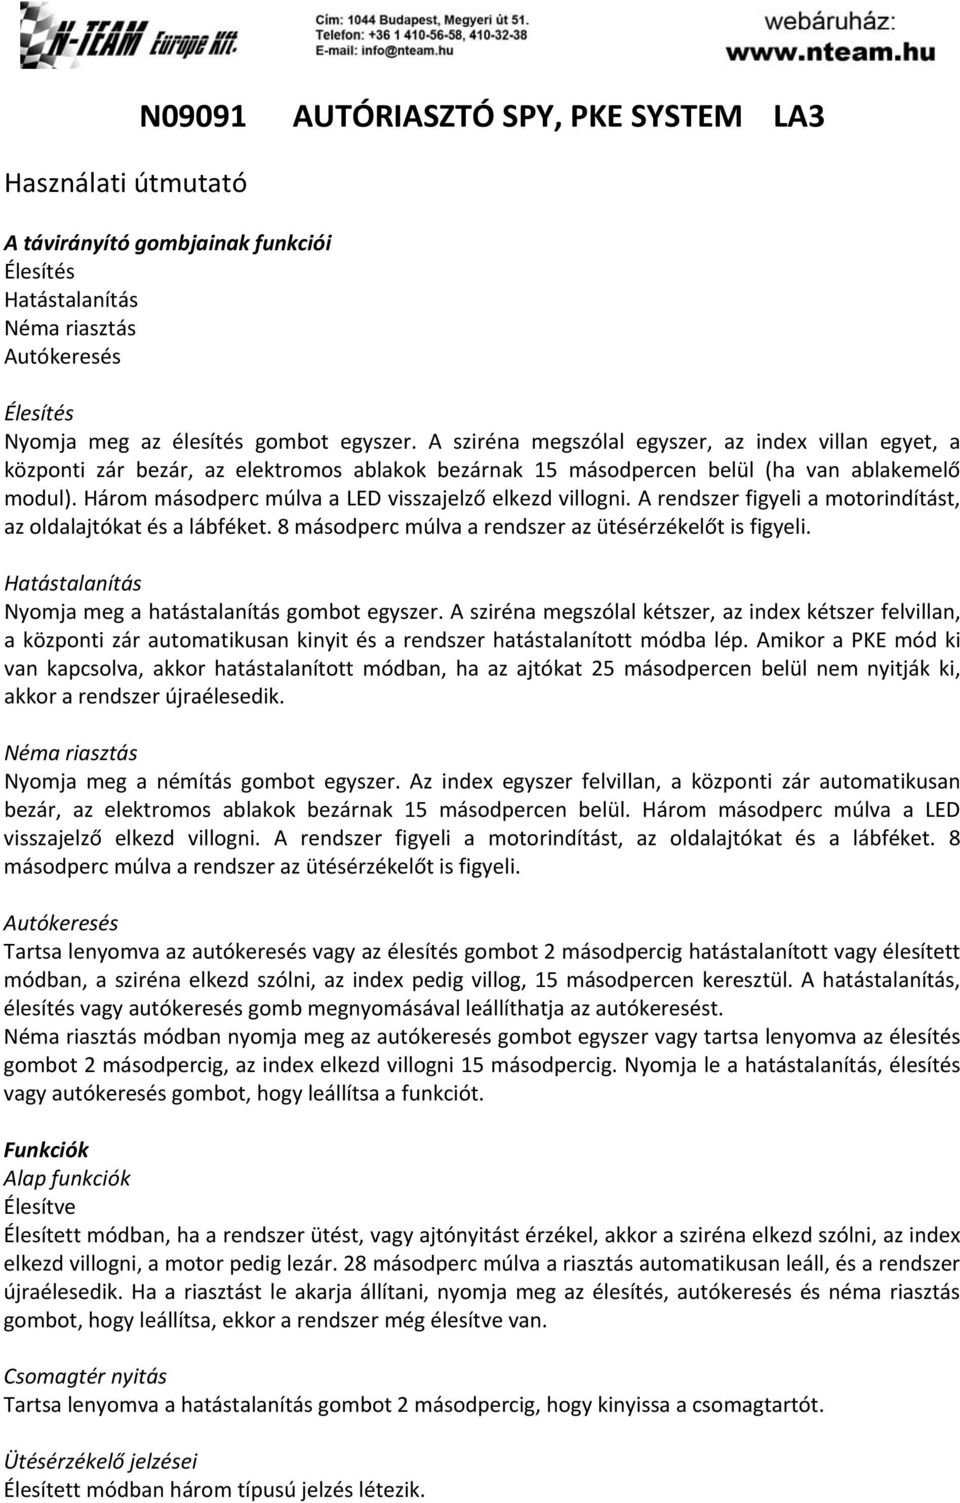 AUTÓRIASZTÓ SPY, PKE SYSTEM LA3 - PDF Free Download